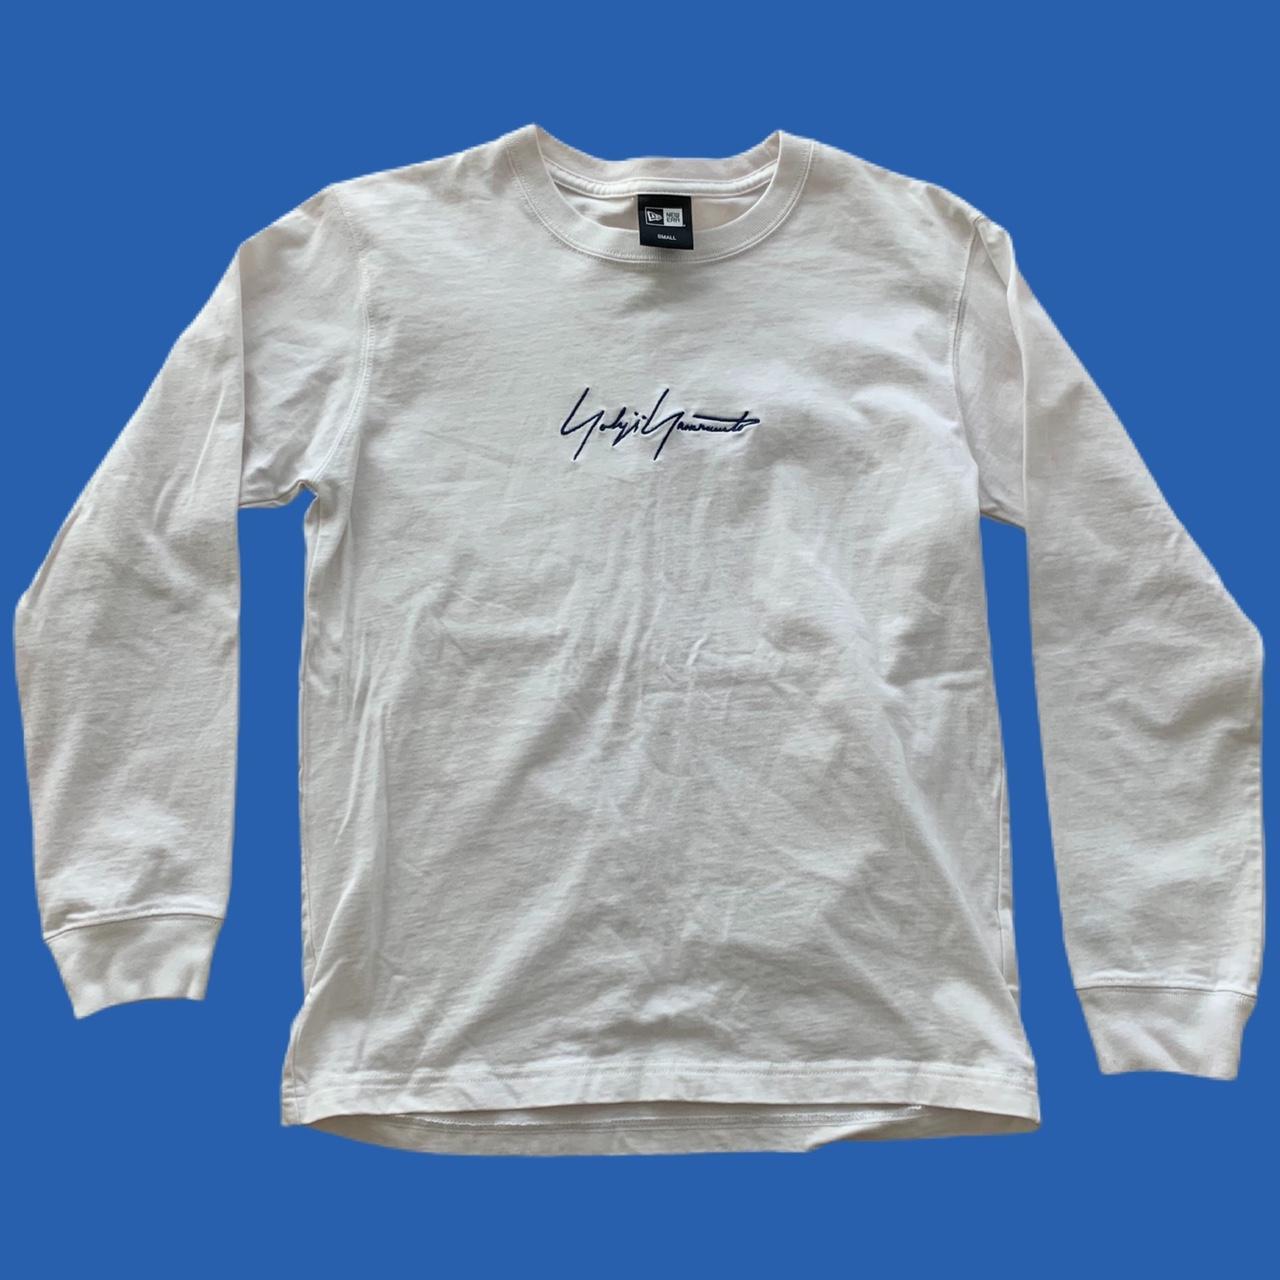 New Era x Yohji Yamamoto Long Sleeve T-shirt , Size...